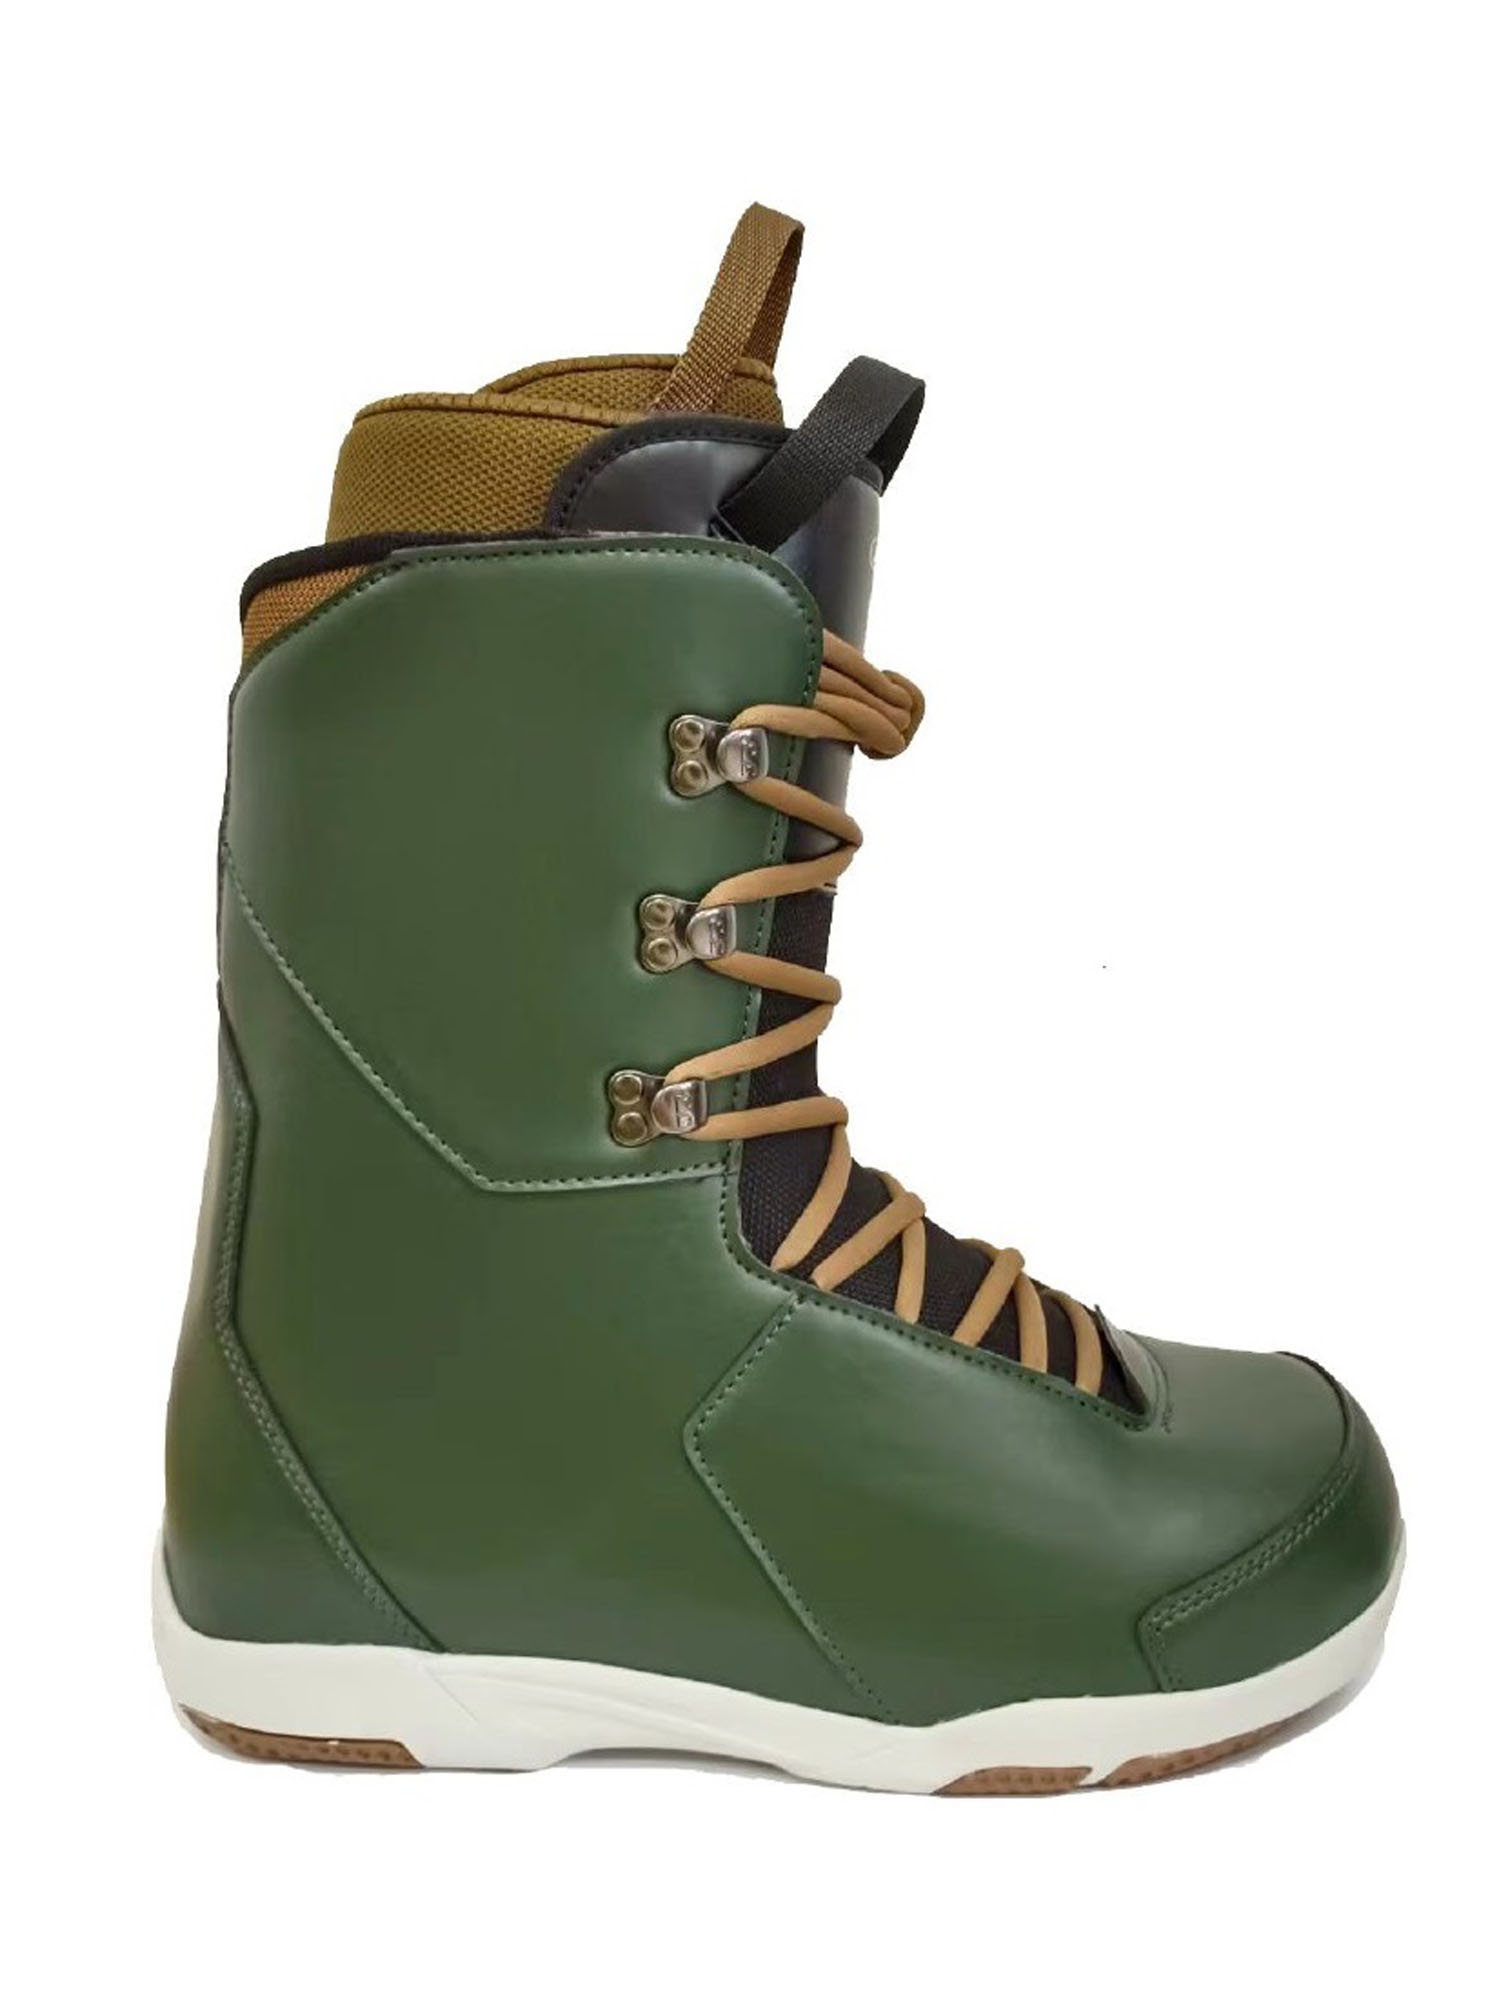 Ботинки для сноуборда Joint  Forceful 2023 grey green/light brown 27,5 см